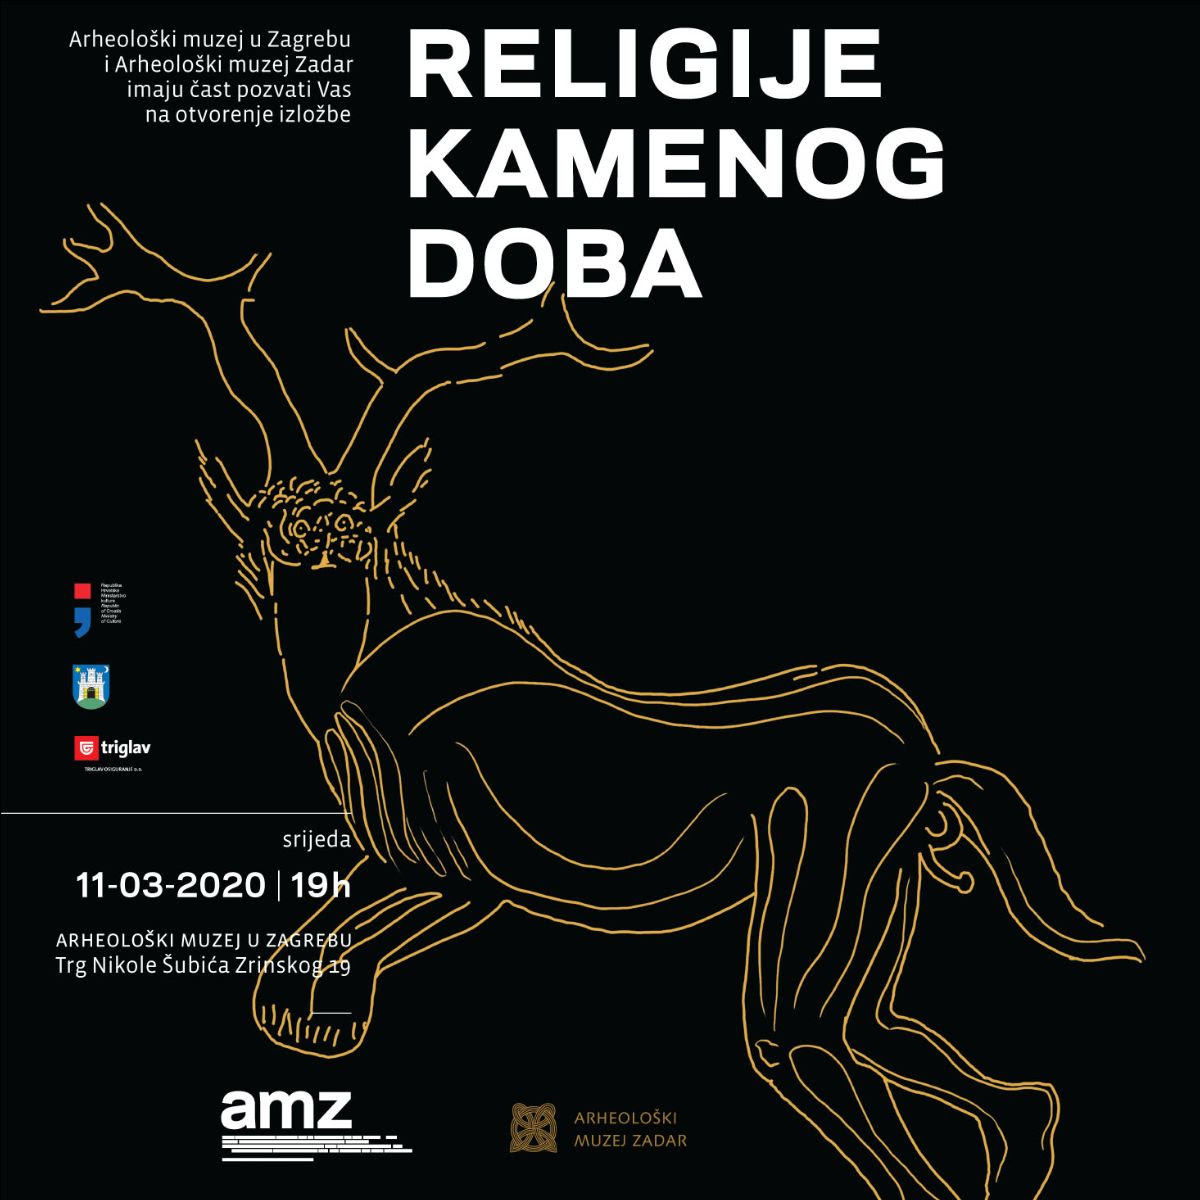 Otvorenje izložbe “Religije kamenog doba” u Arheološkom muzeju u Zagrebu